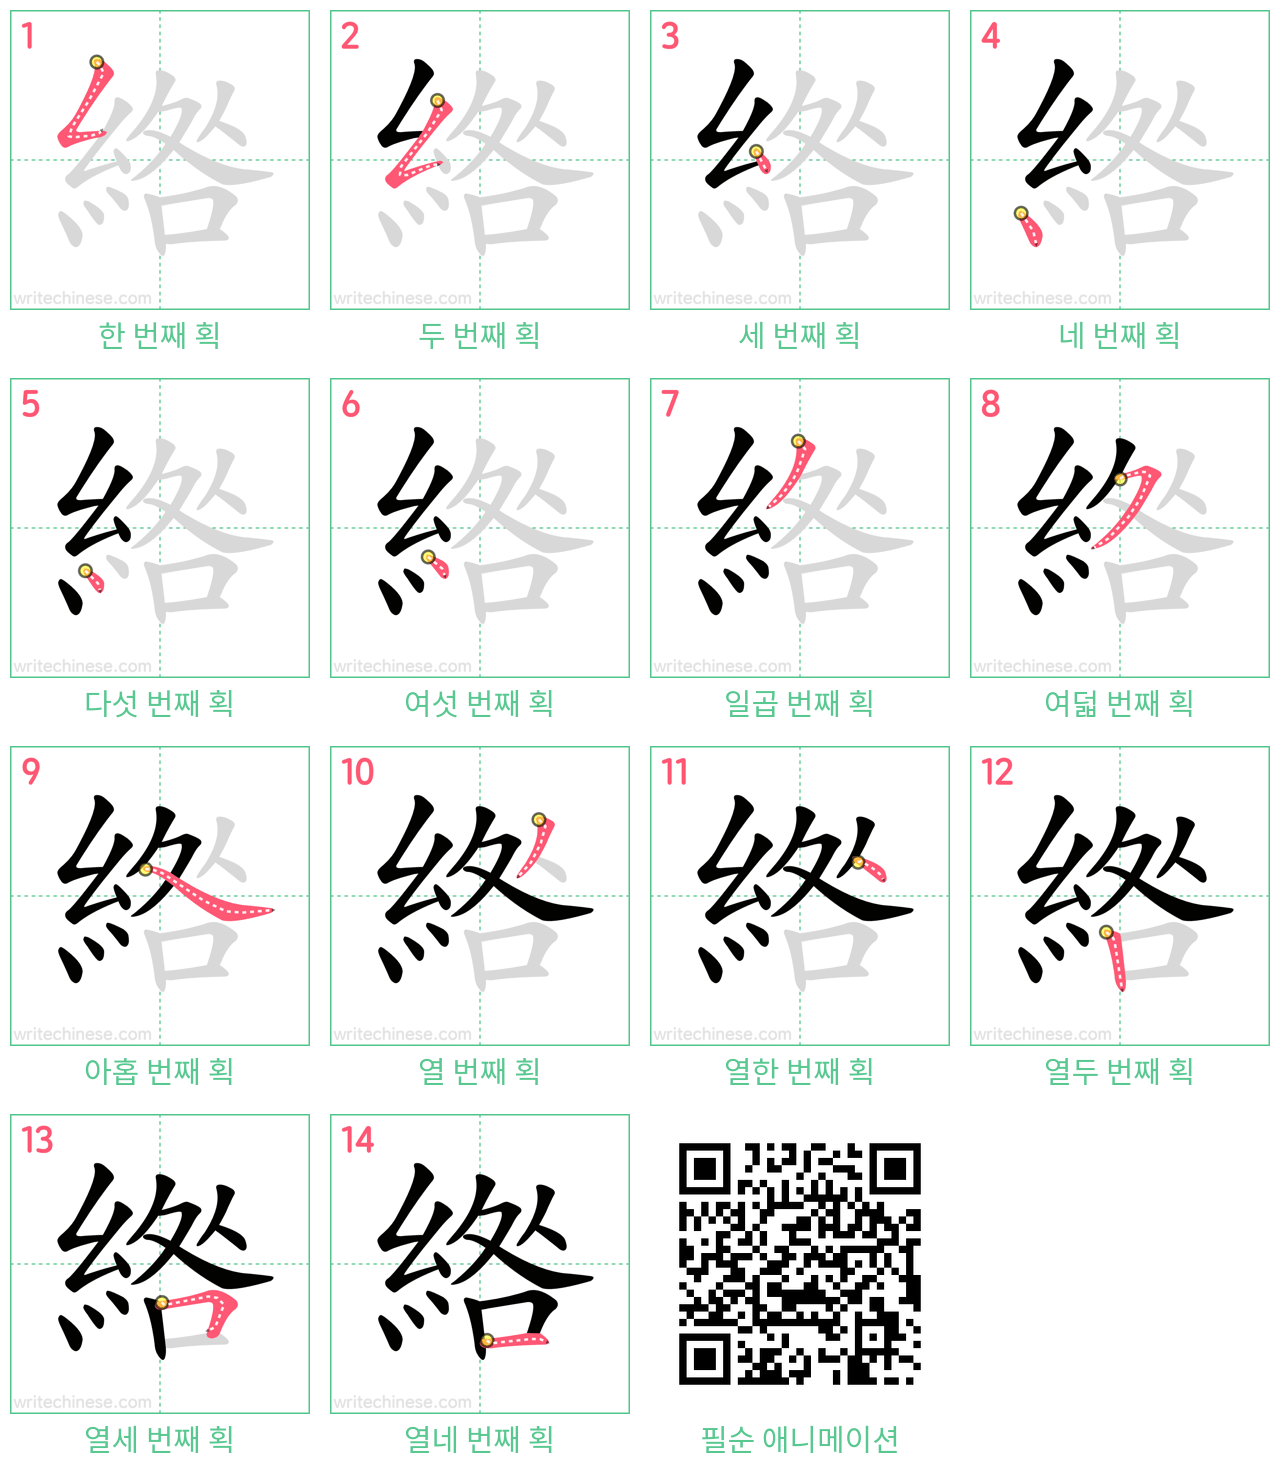 綹 step-by-step stroke order diagrams